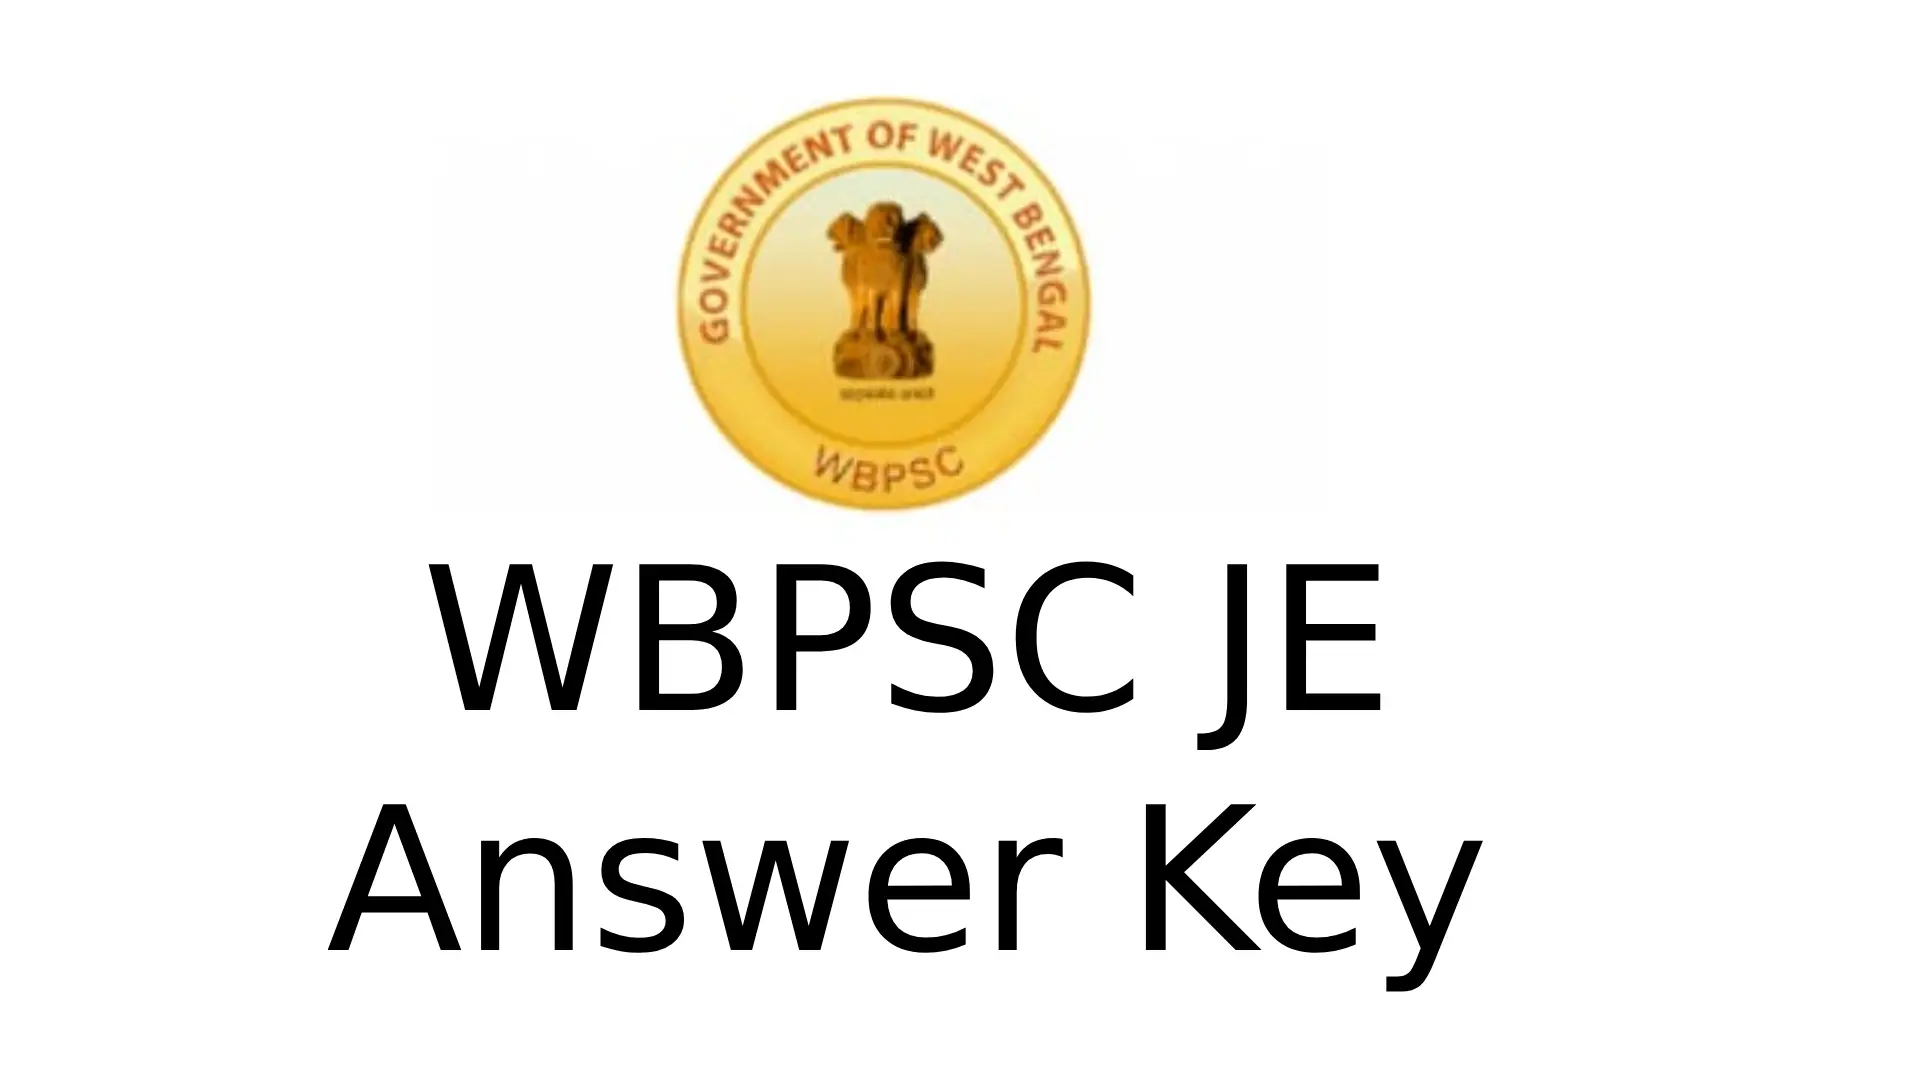 WBPSC JE Answer Key 2023